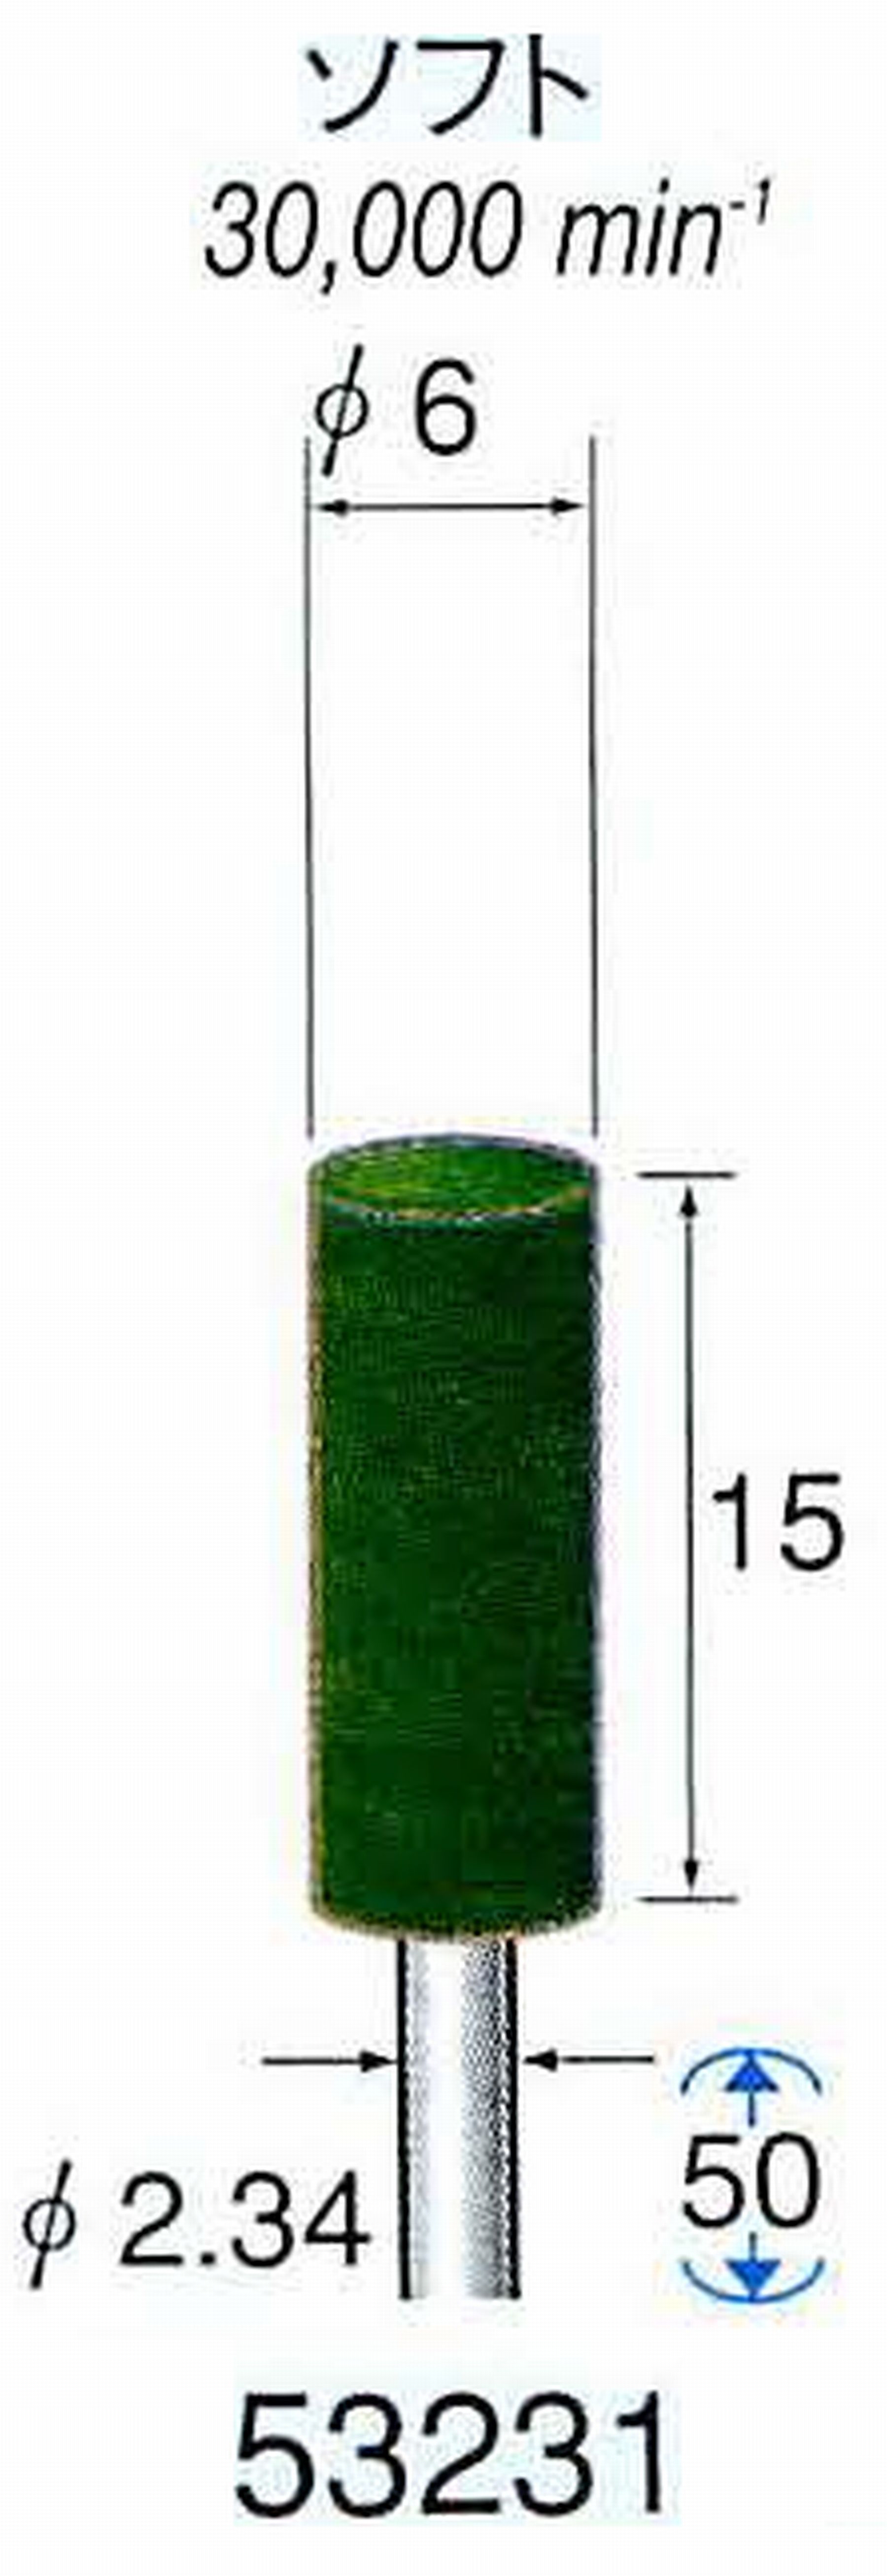 ナカニシ/NAKANISHI グリーンフェルトバフ ソフト(研磨材入り) 酸化クロム(青棒)含浸タイプ 軸径(シャンク)φ2.34mm 53231